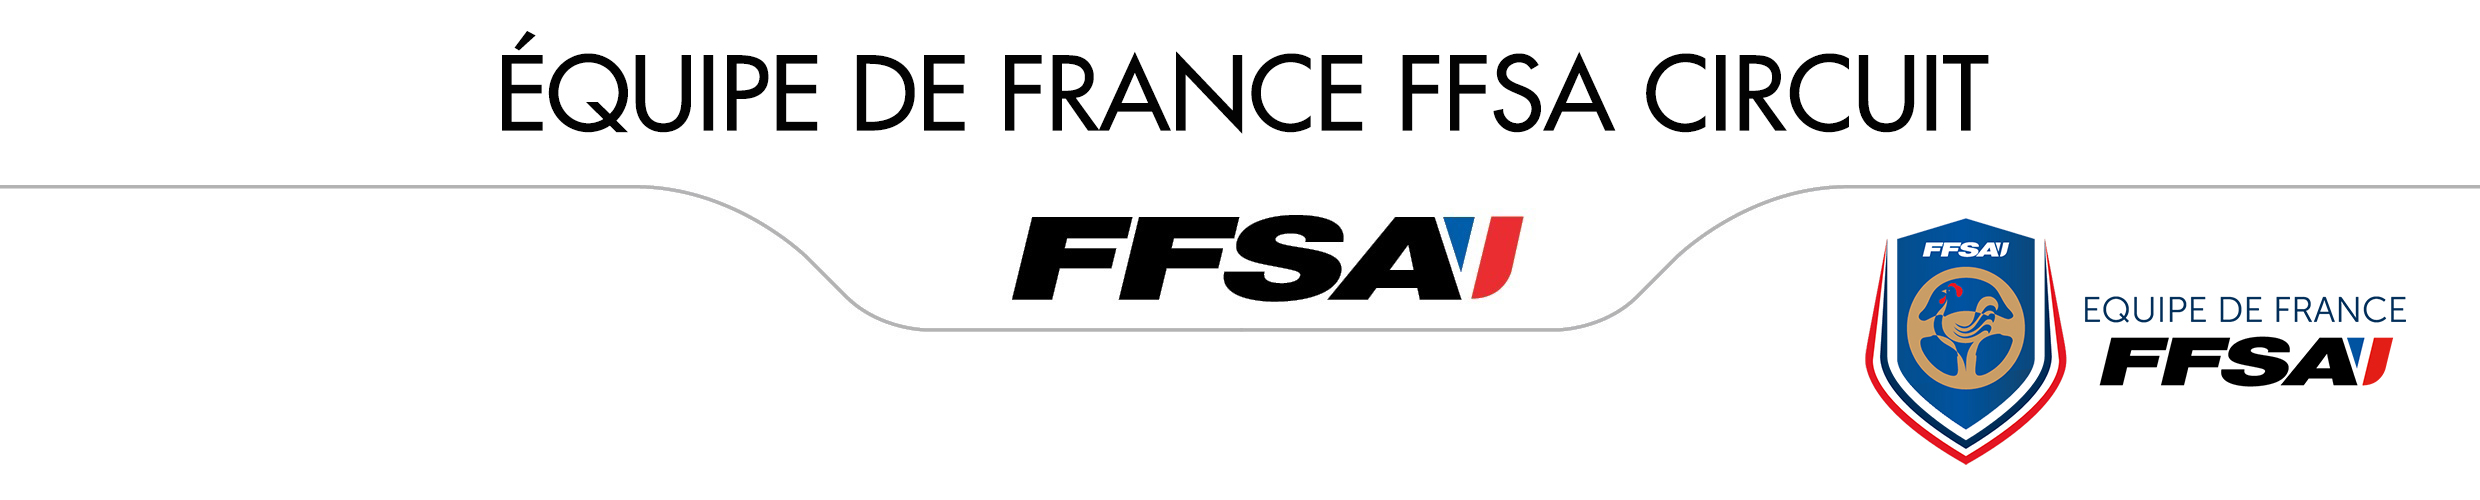 FFSA - Equipe de France FFSA Circuit